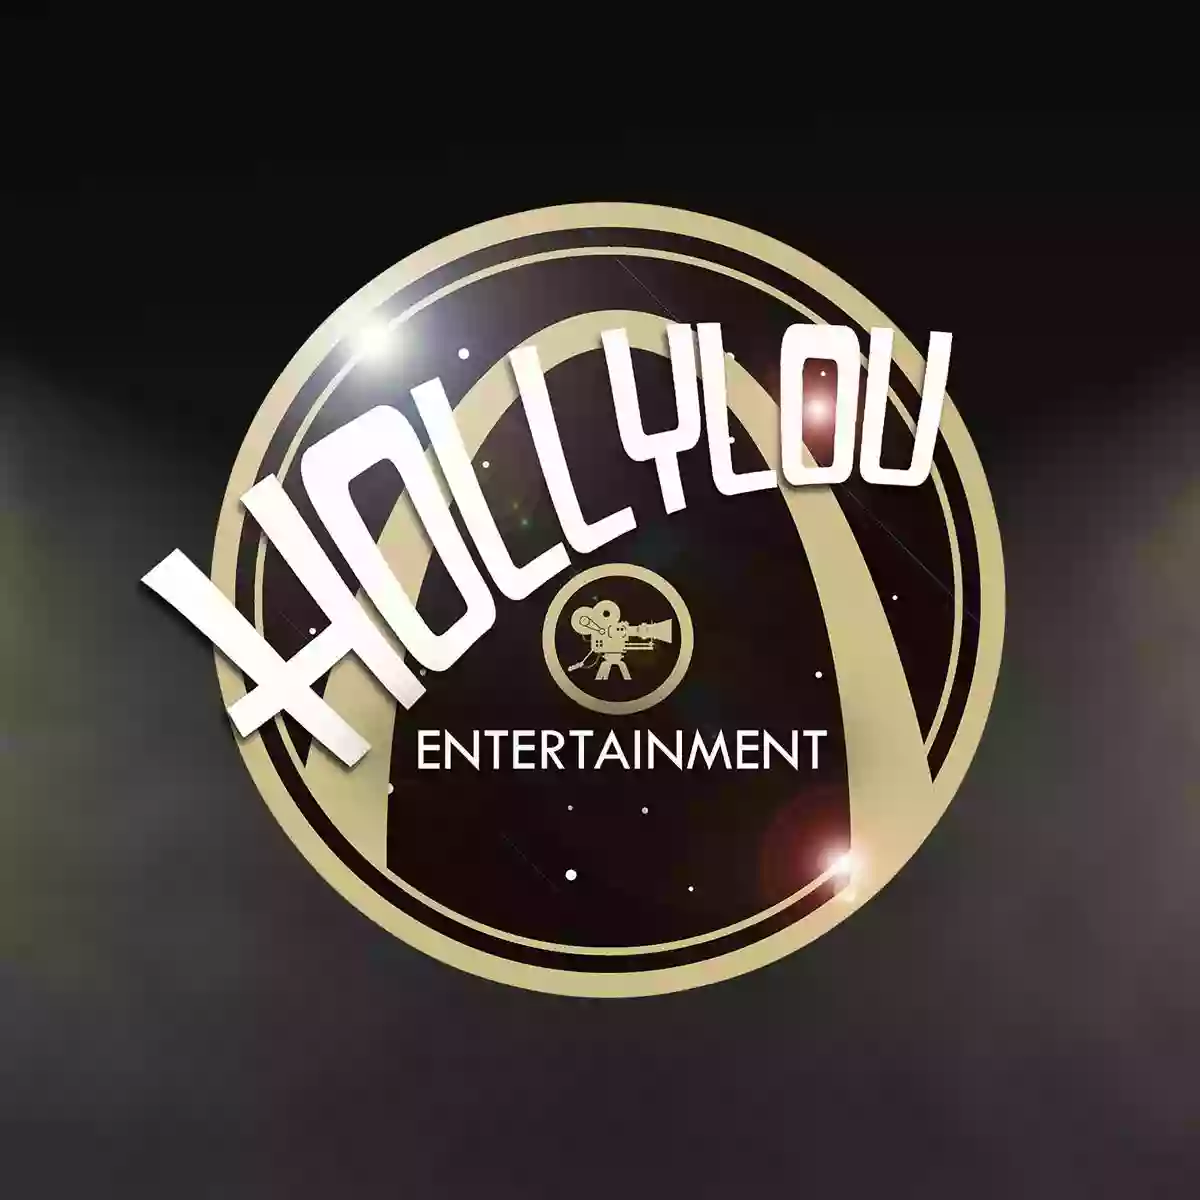 HollyLou Entertainment